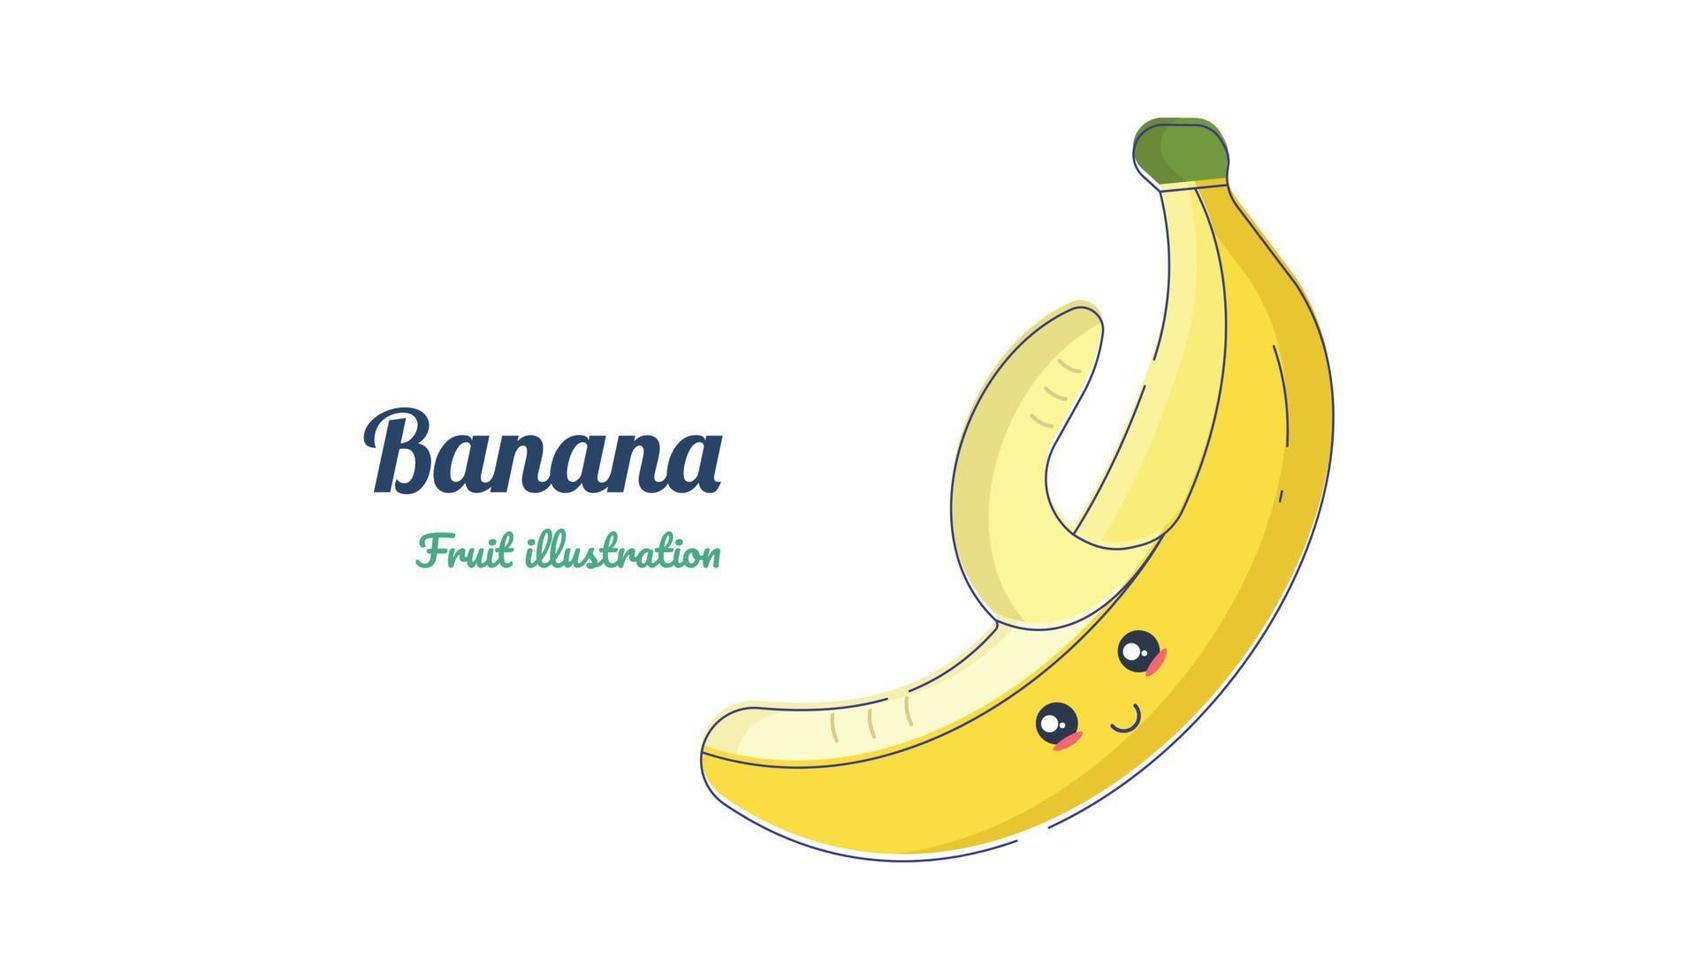 bananenillustrationsdesign vektor